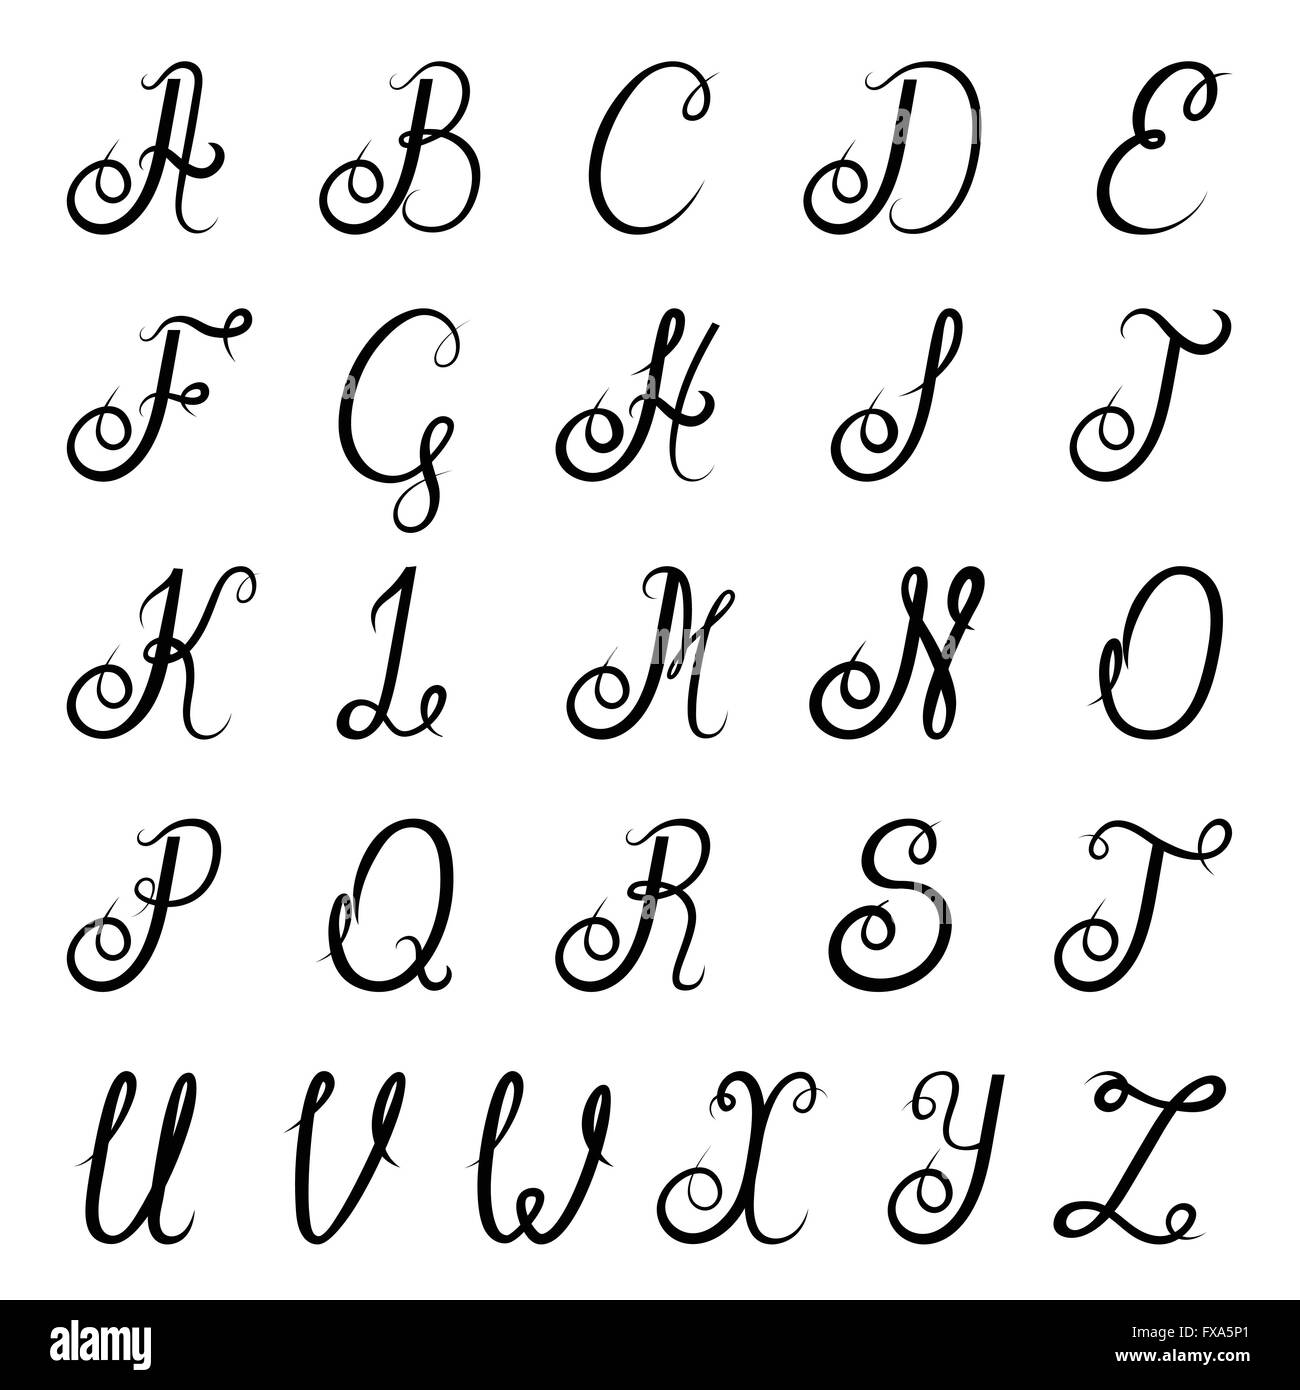 Noir alphabet calligraphie Image Vectorielle Stock - Alamy